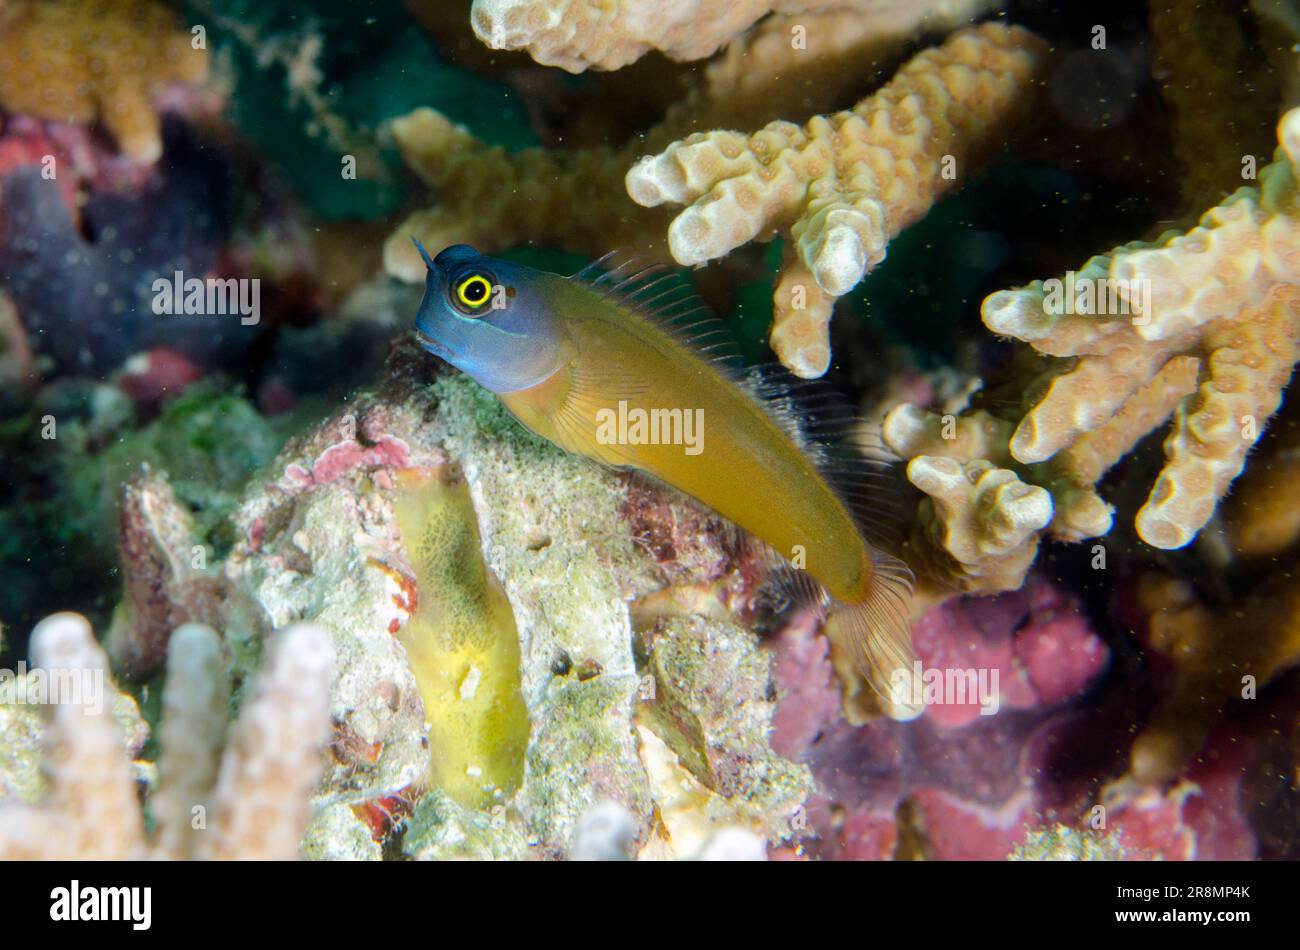 Eye Spot Blennies, Ecsenius ops, Post dive site, Menjangan Island, Bali, Indonesia Stock Photo